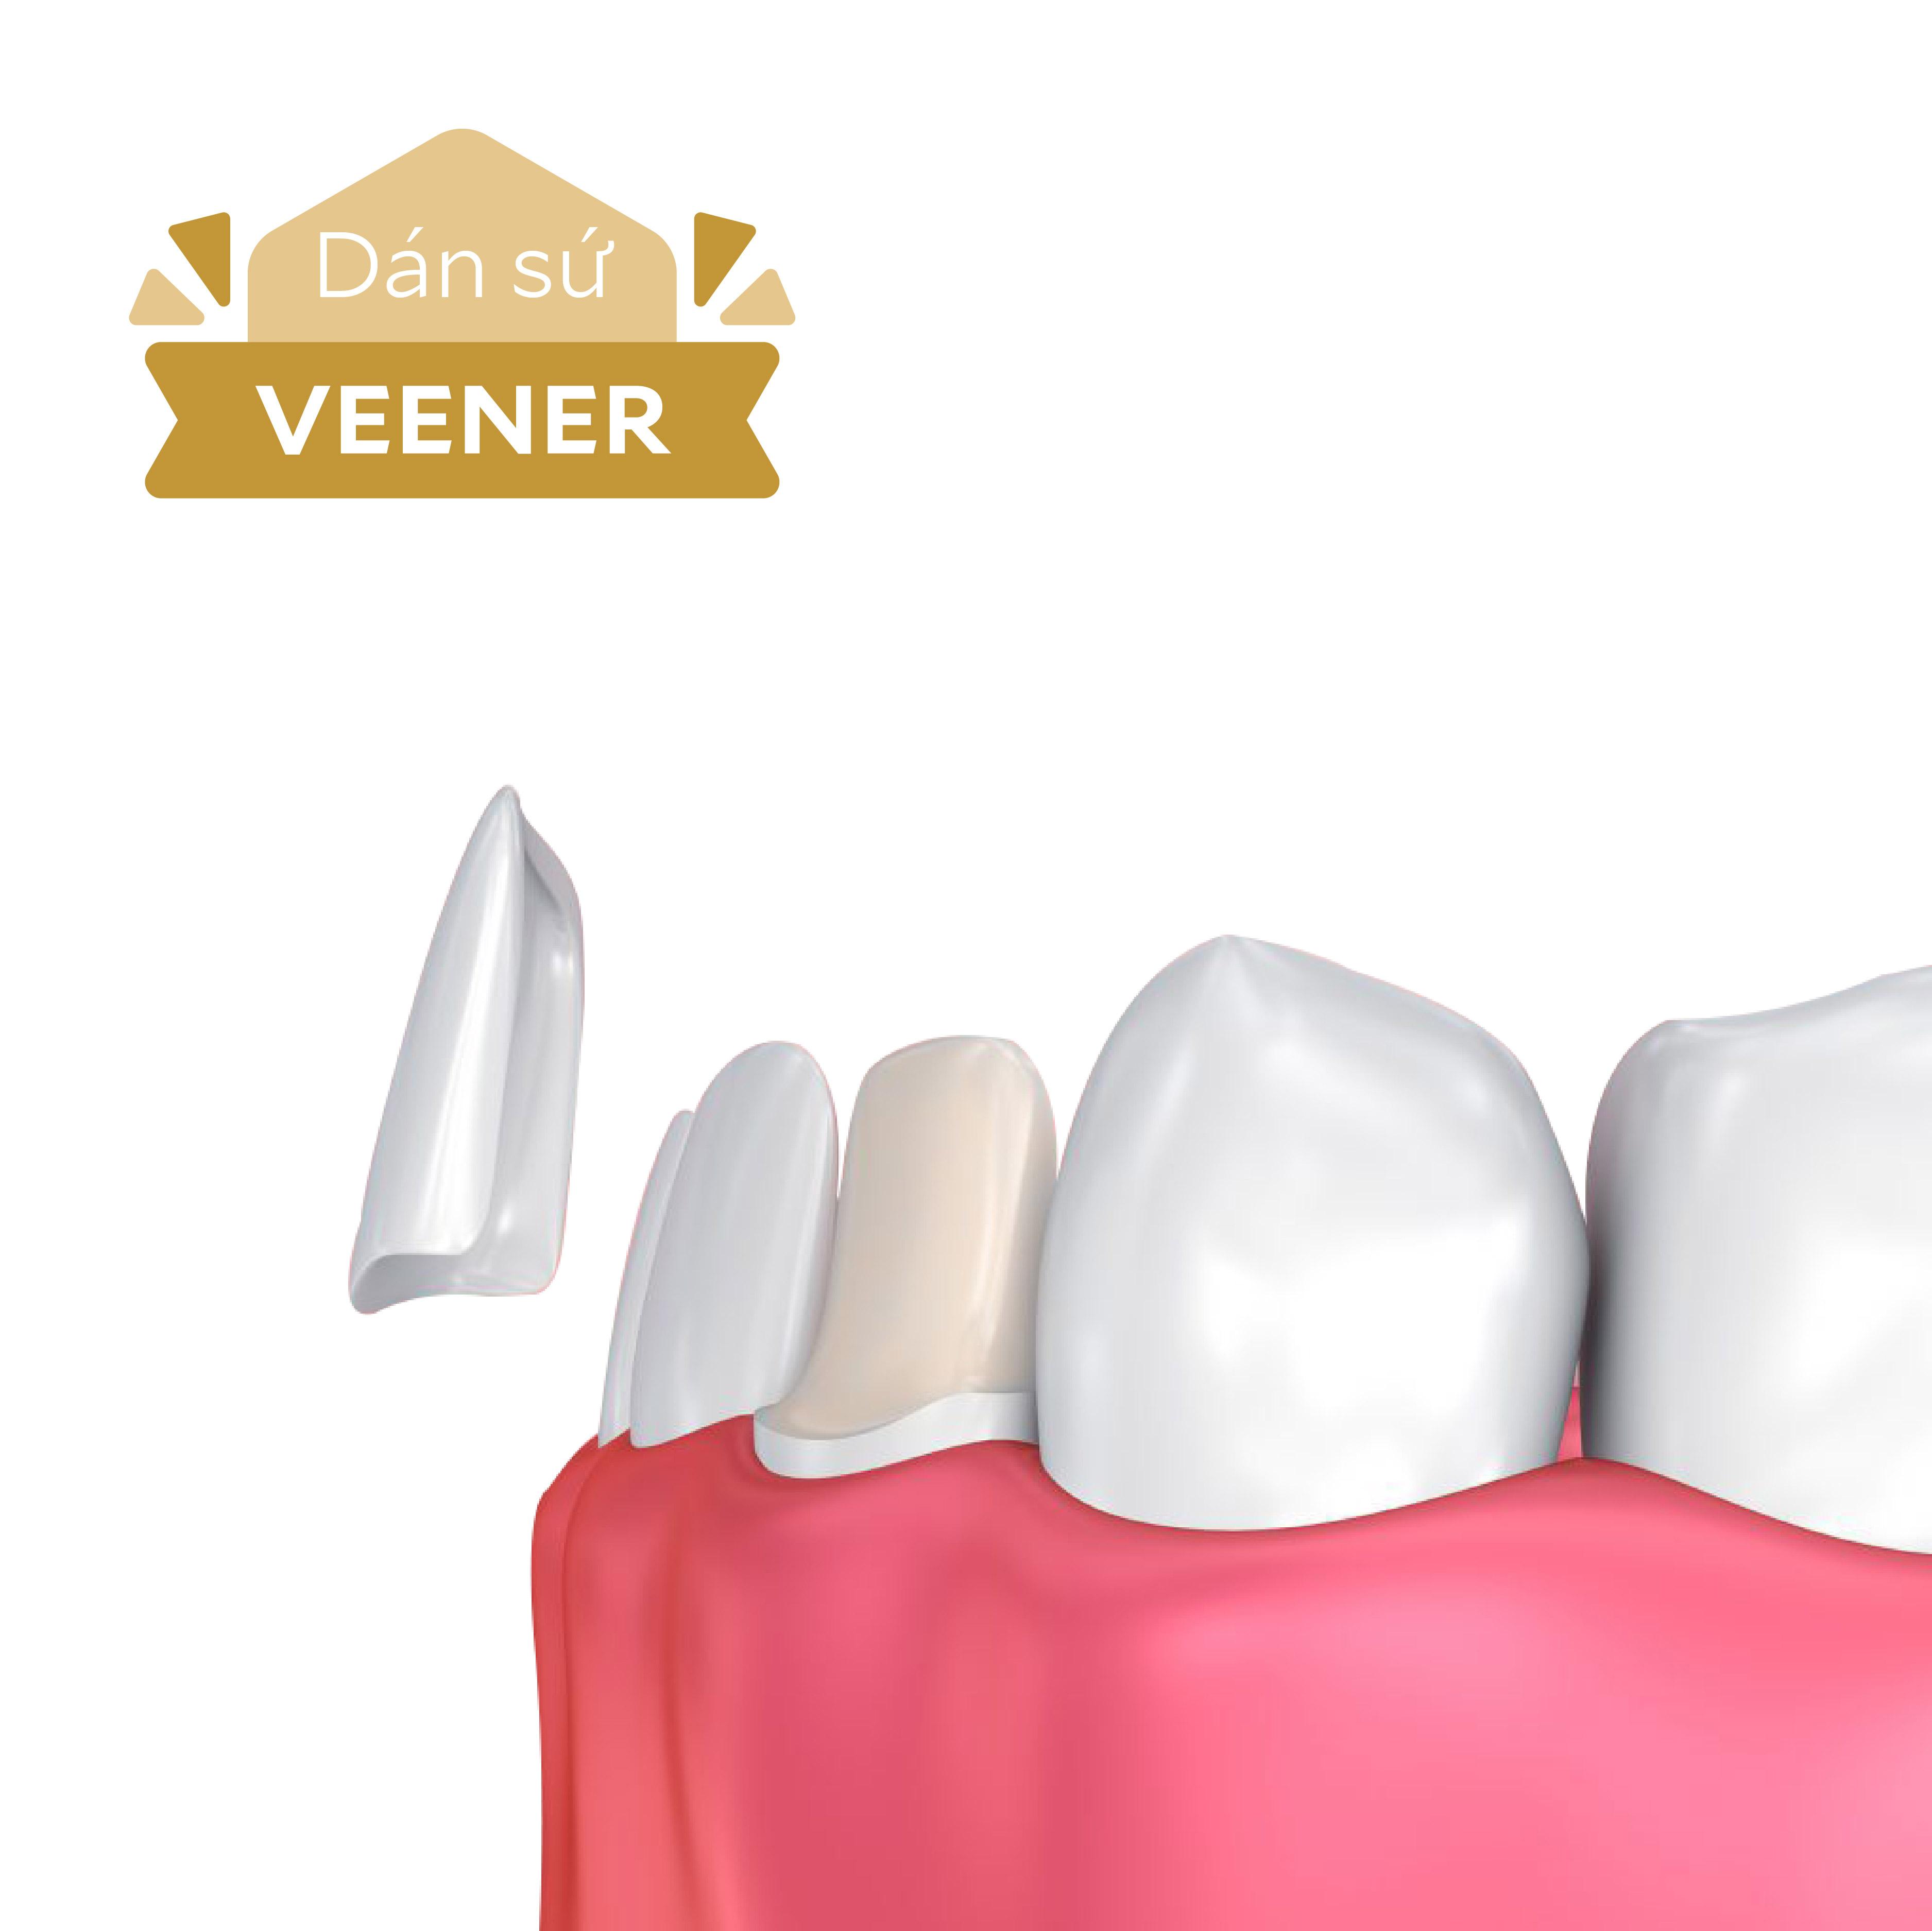 Phương pháp này thích hợp cho các trường hợp răng sậm màu, ố vàng, răng bị mòn, vỡ nhưng chưa quá 1/3 thân răng.